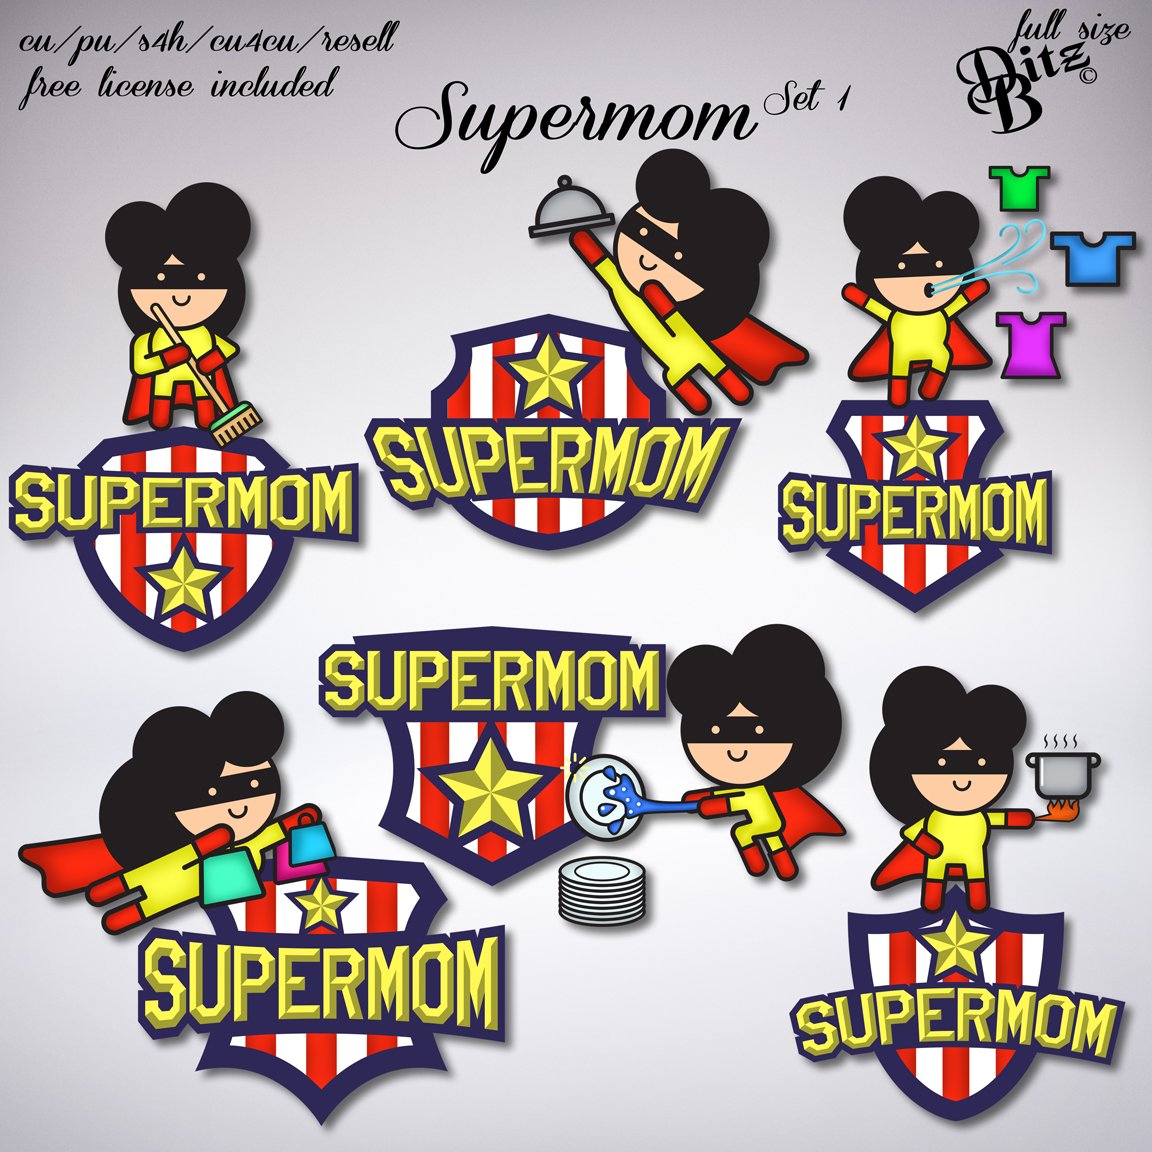 Supermom - Payhip